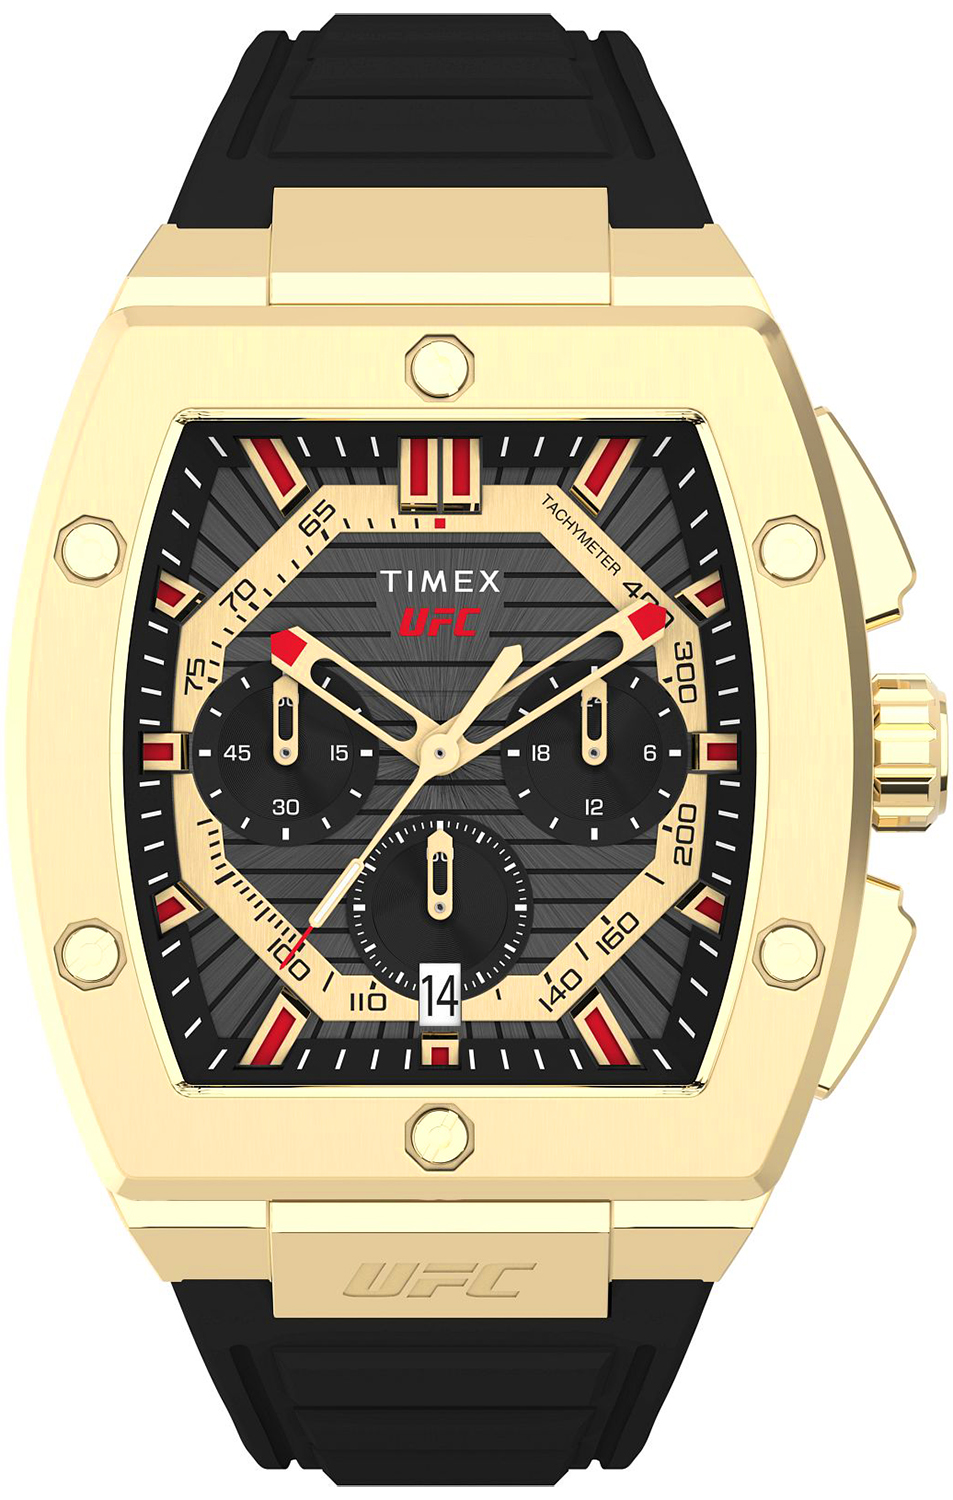 Zdjęcia - Zegarek Timex   TW2V88000 UFC Street - Natychmiastowa WYSYŁKA 0zł (DHL DPD I 